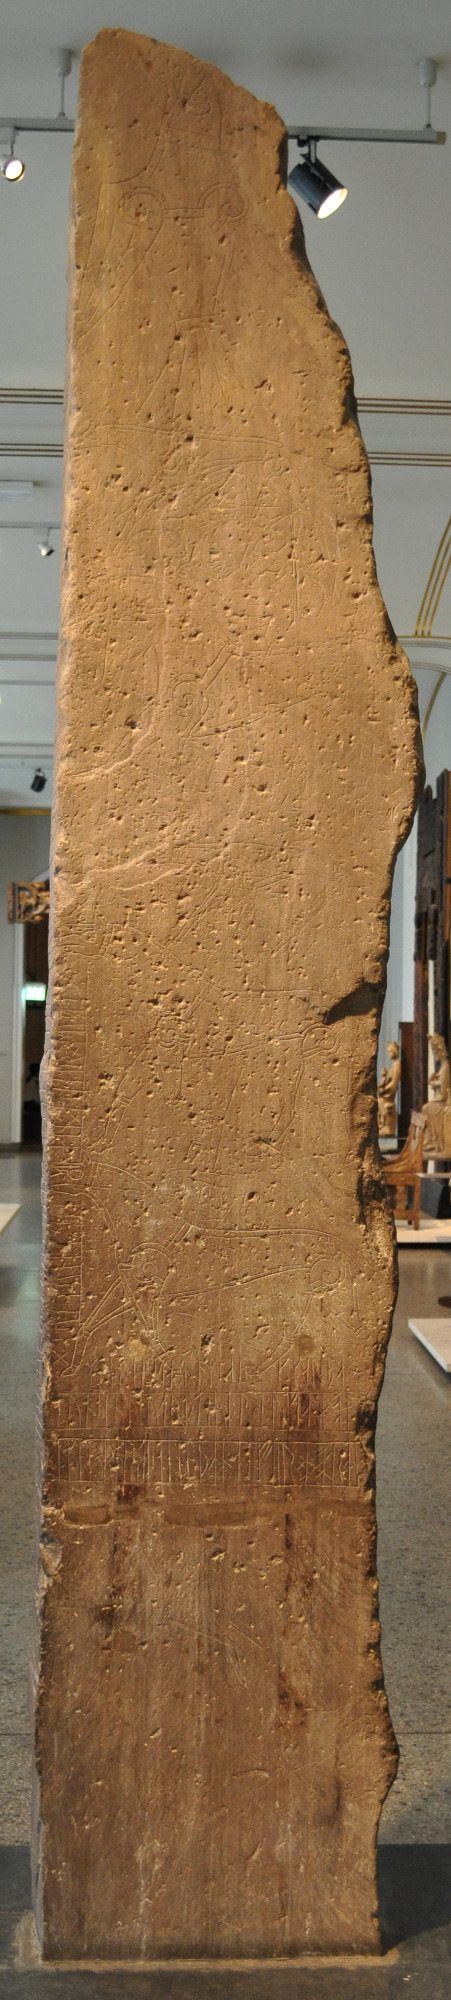 Face de la pierre runique d'Alstad